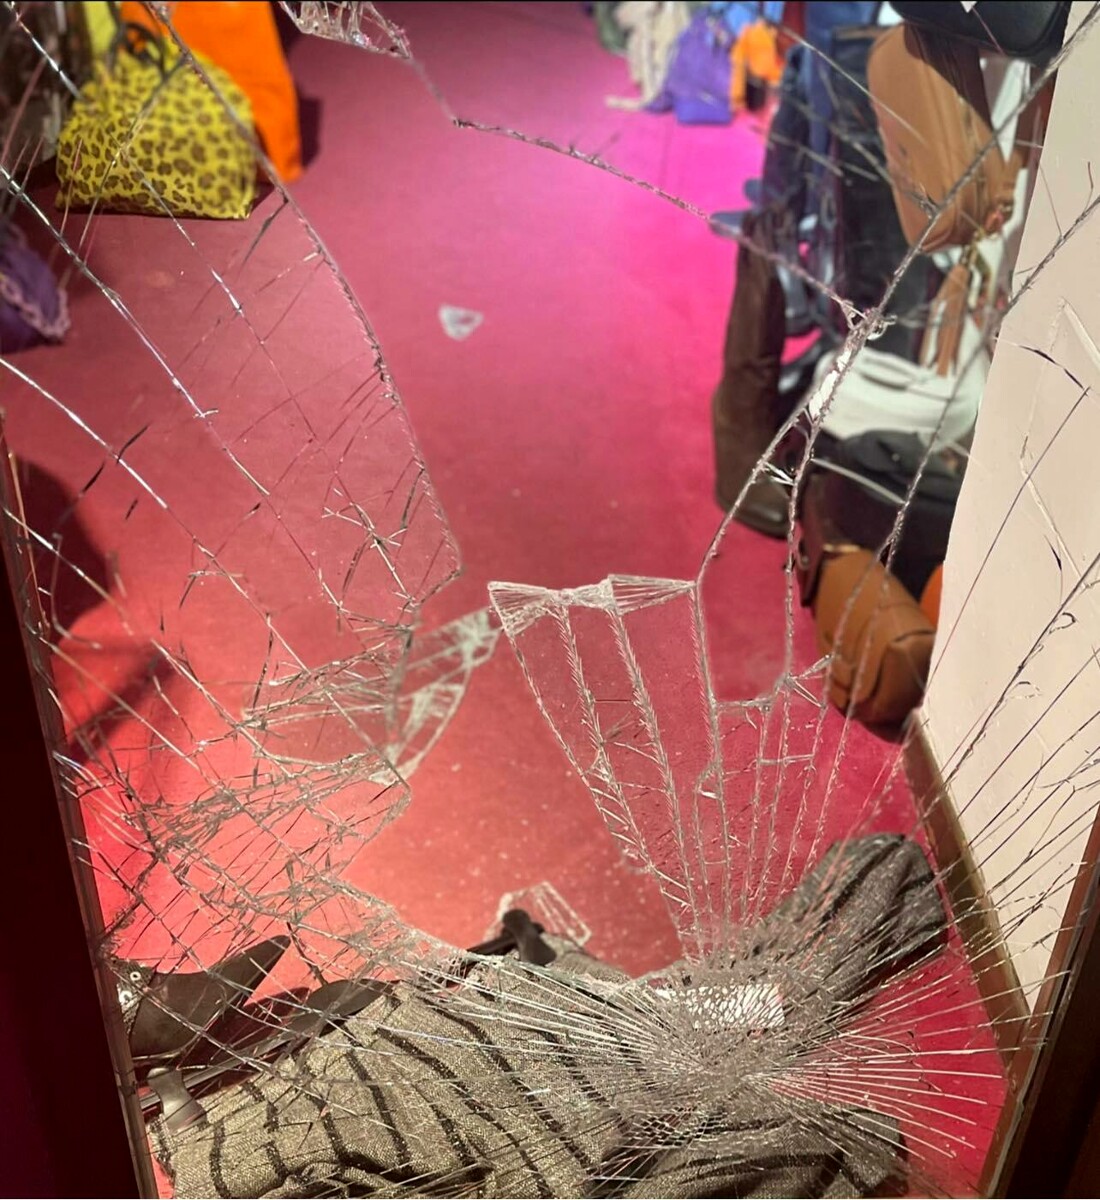 Ladri in pieno centro a Salerno: furto al Luxury Shoes, danni alla vetrina